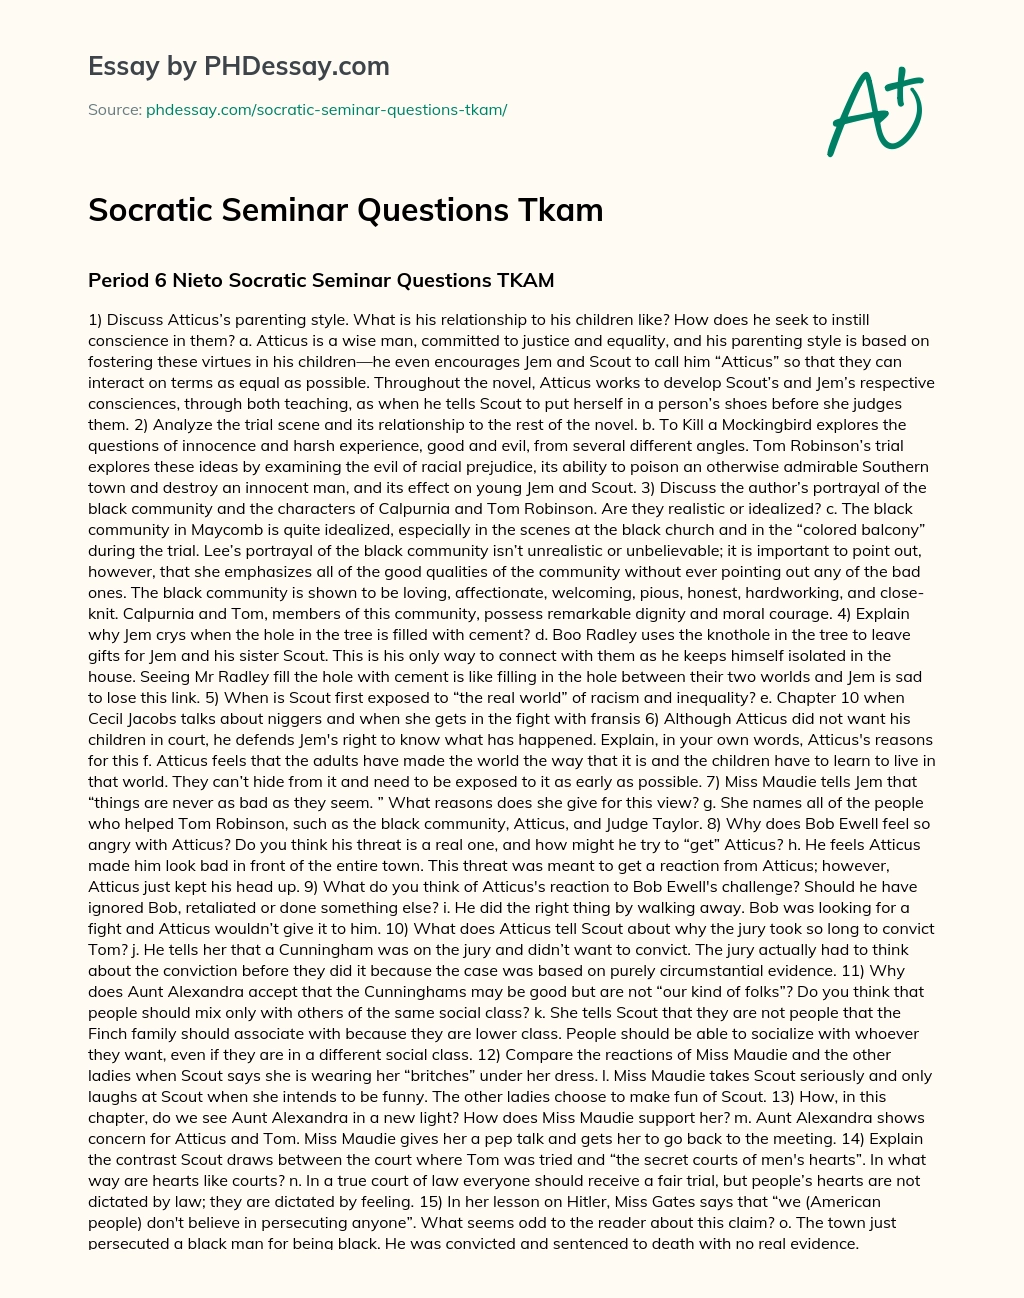 Socratic Seminar Questions Tkam Discussion Essay Example 